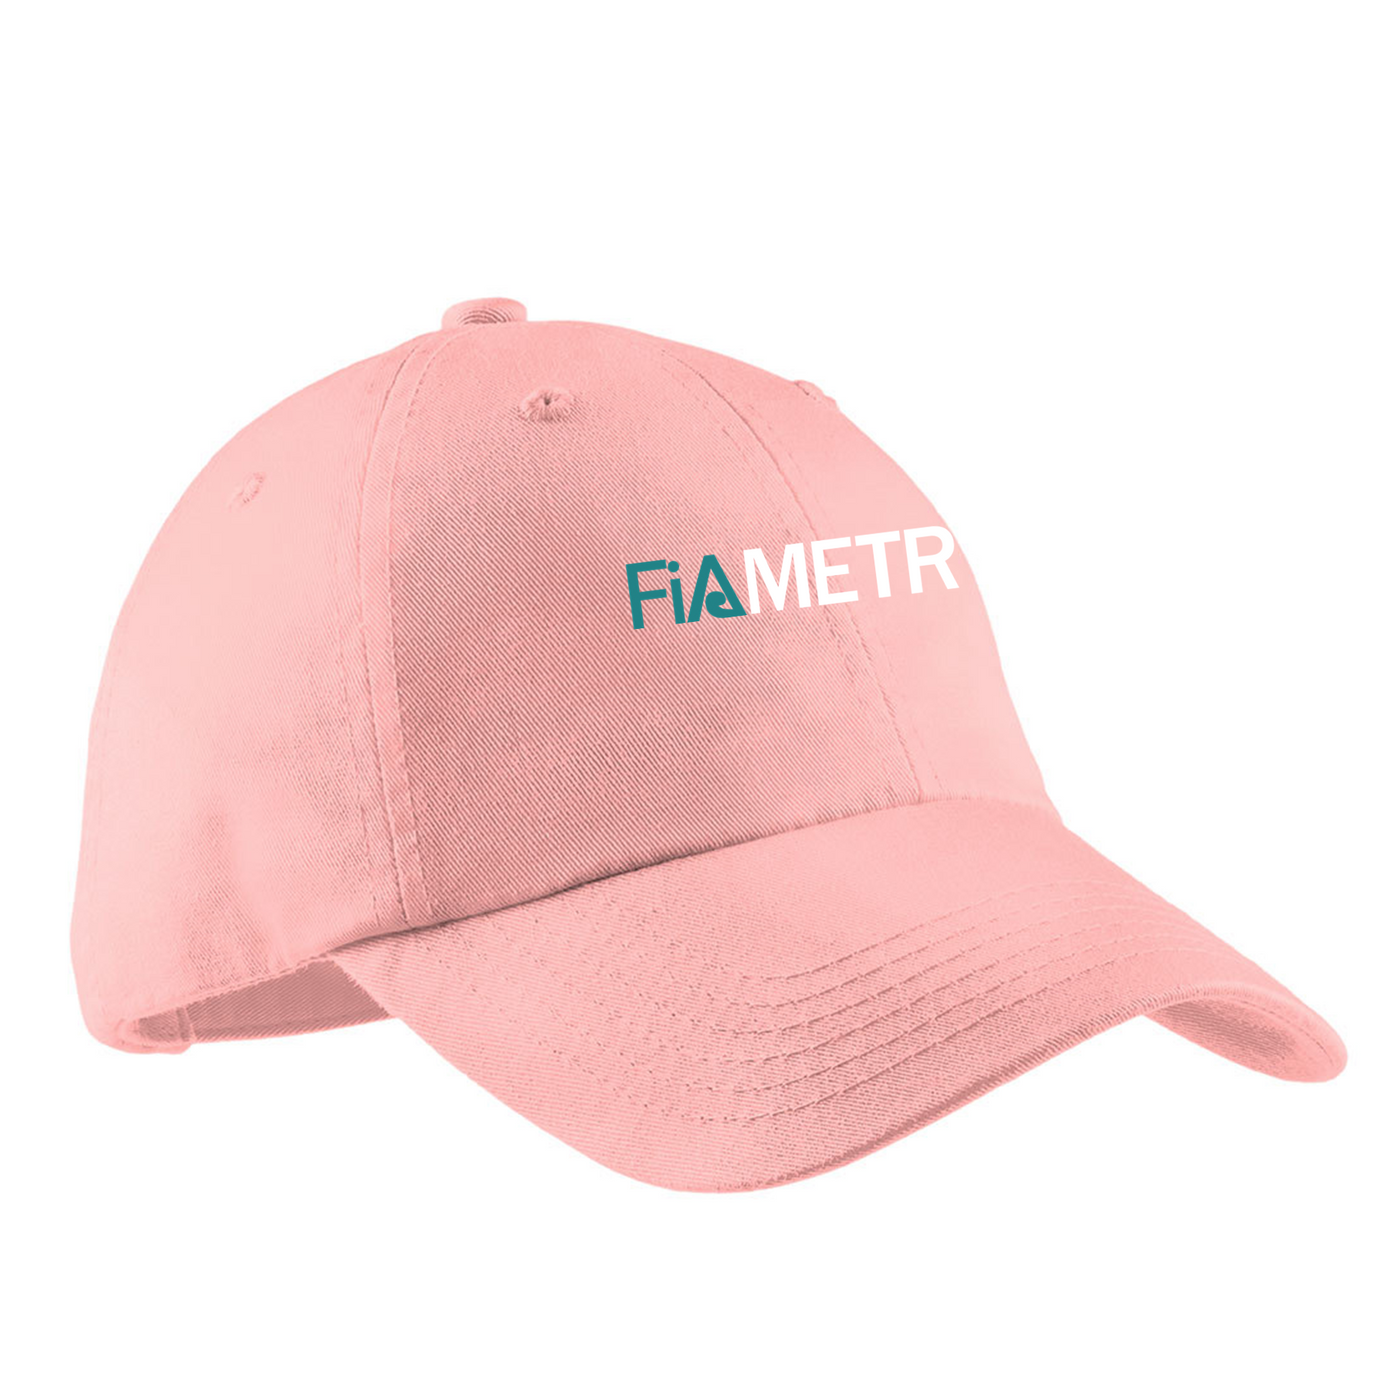 FiA Metro Hat Pre-Order March 2022